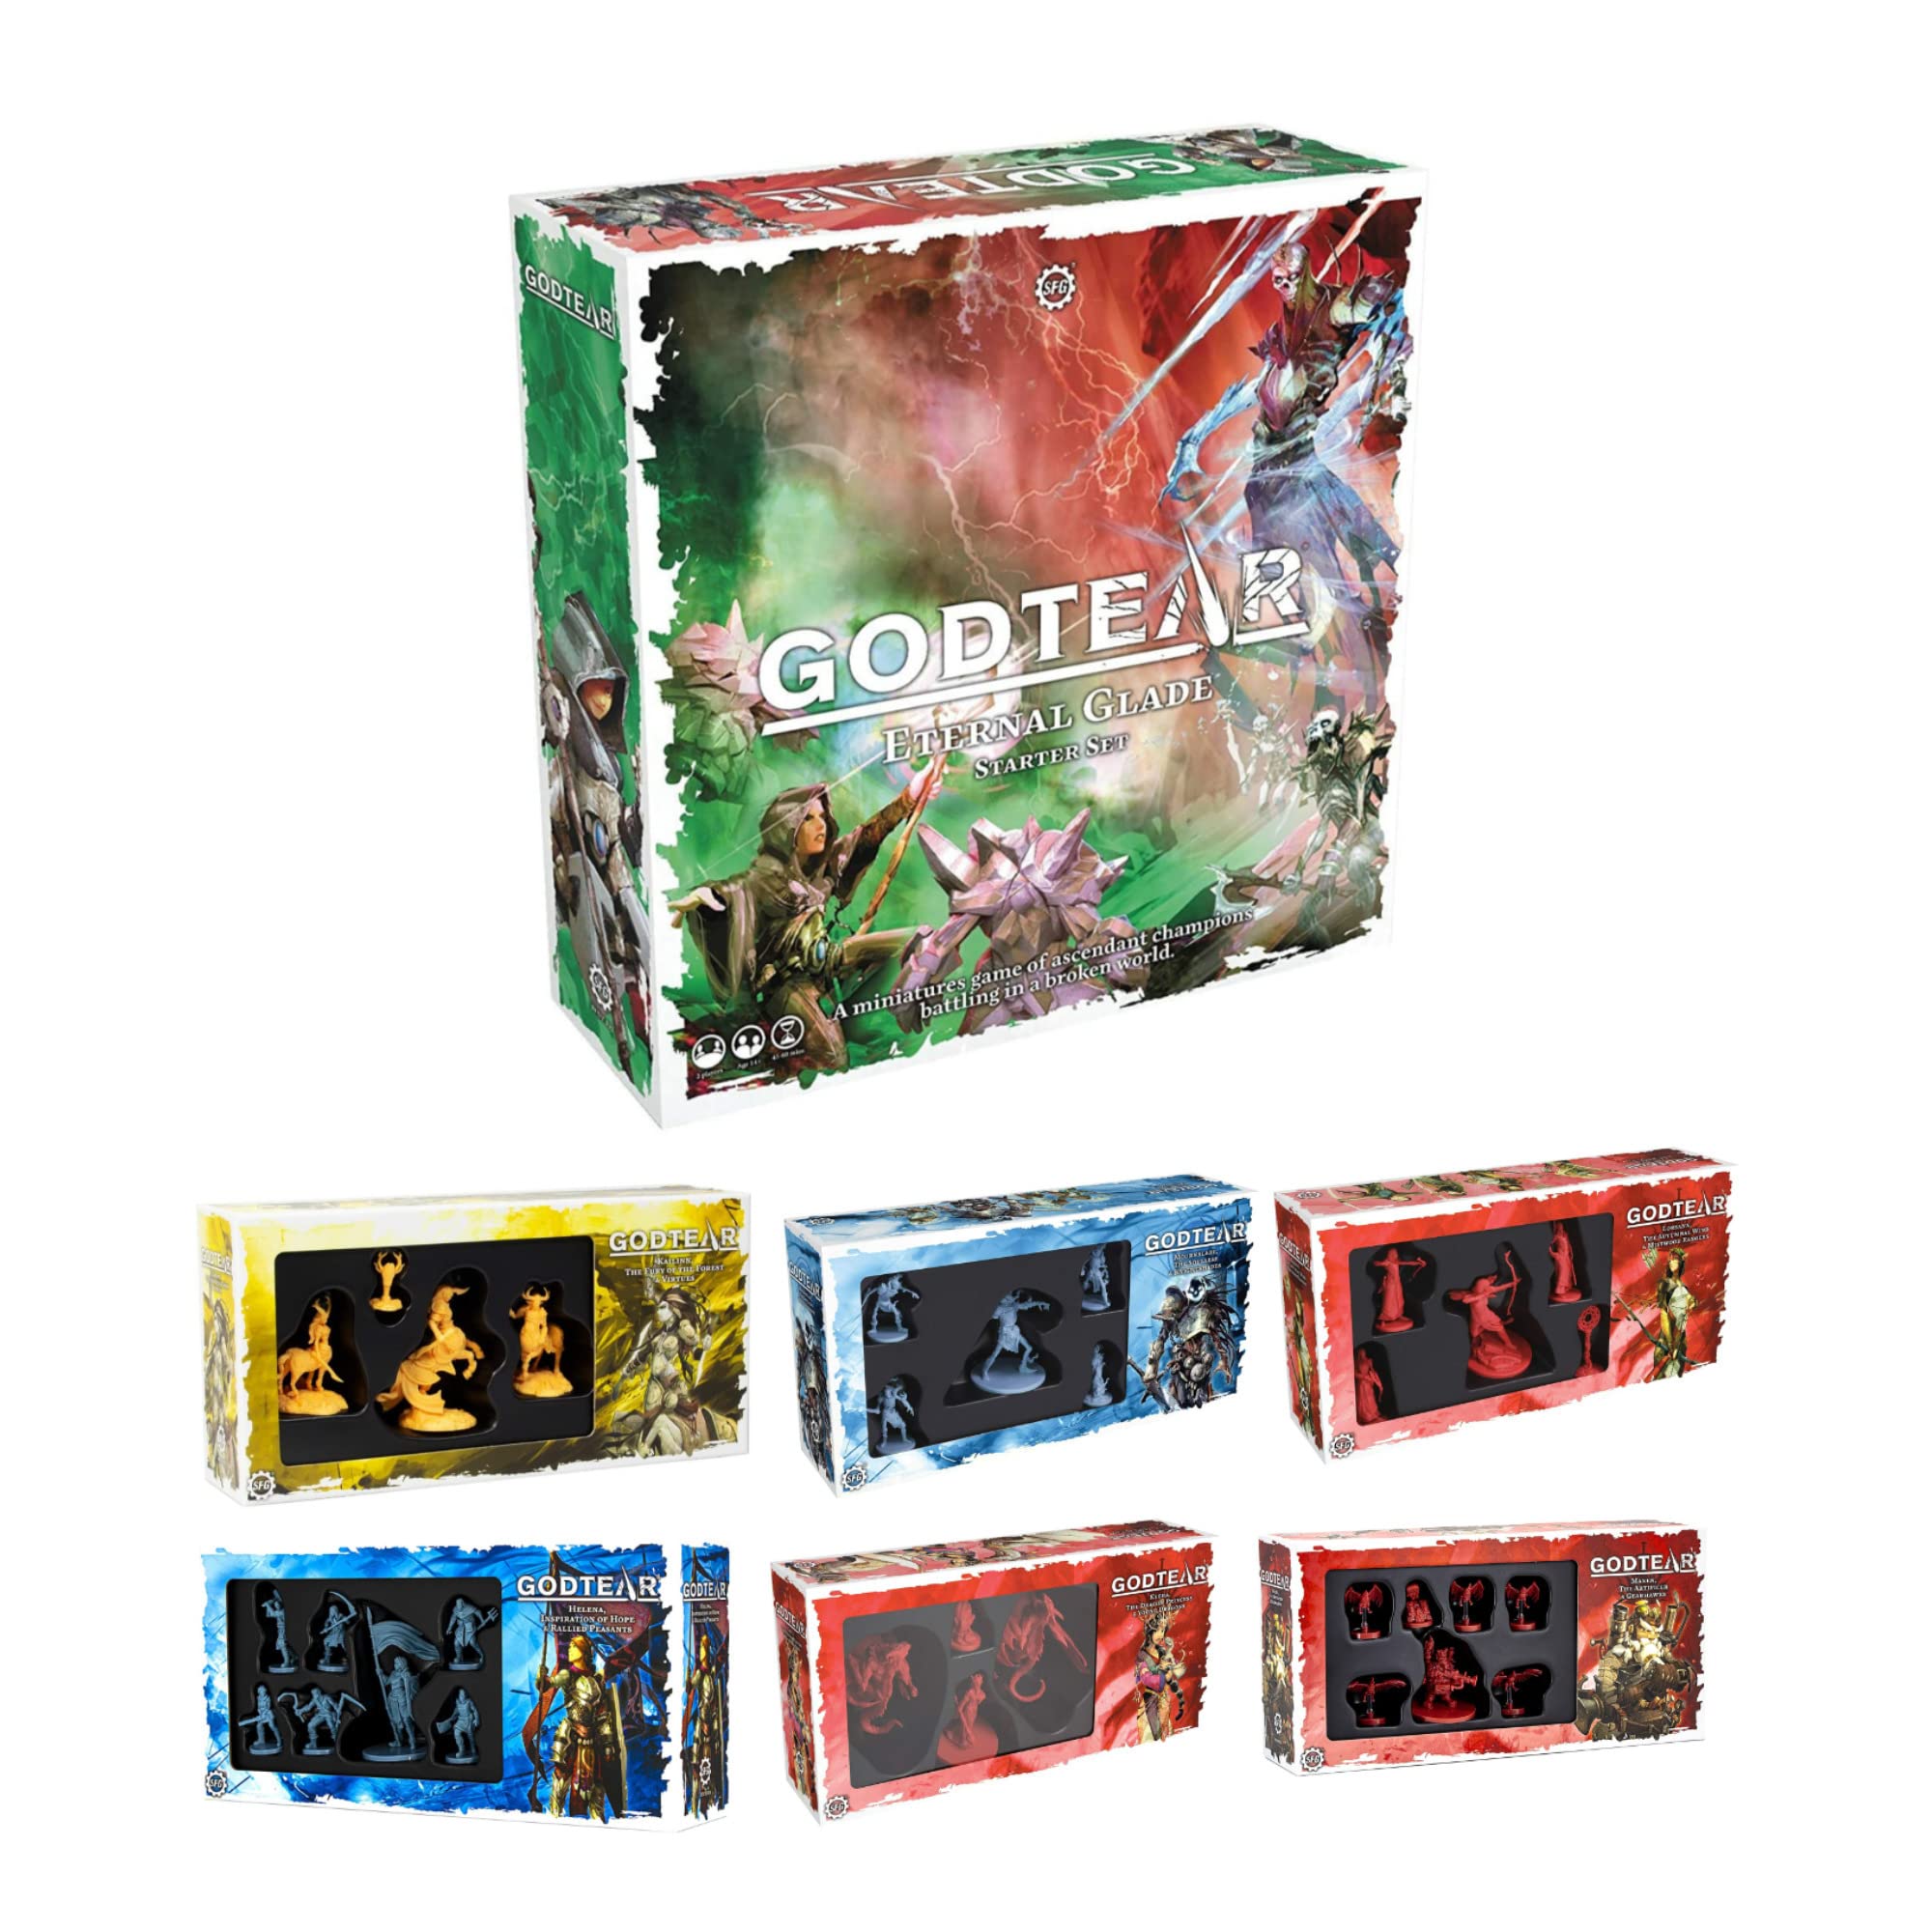 STEAMFORGED Godtear Eternal Glade Starter Set Bundle with Expansion Sets (7 Items)